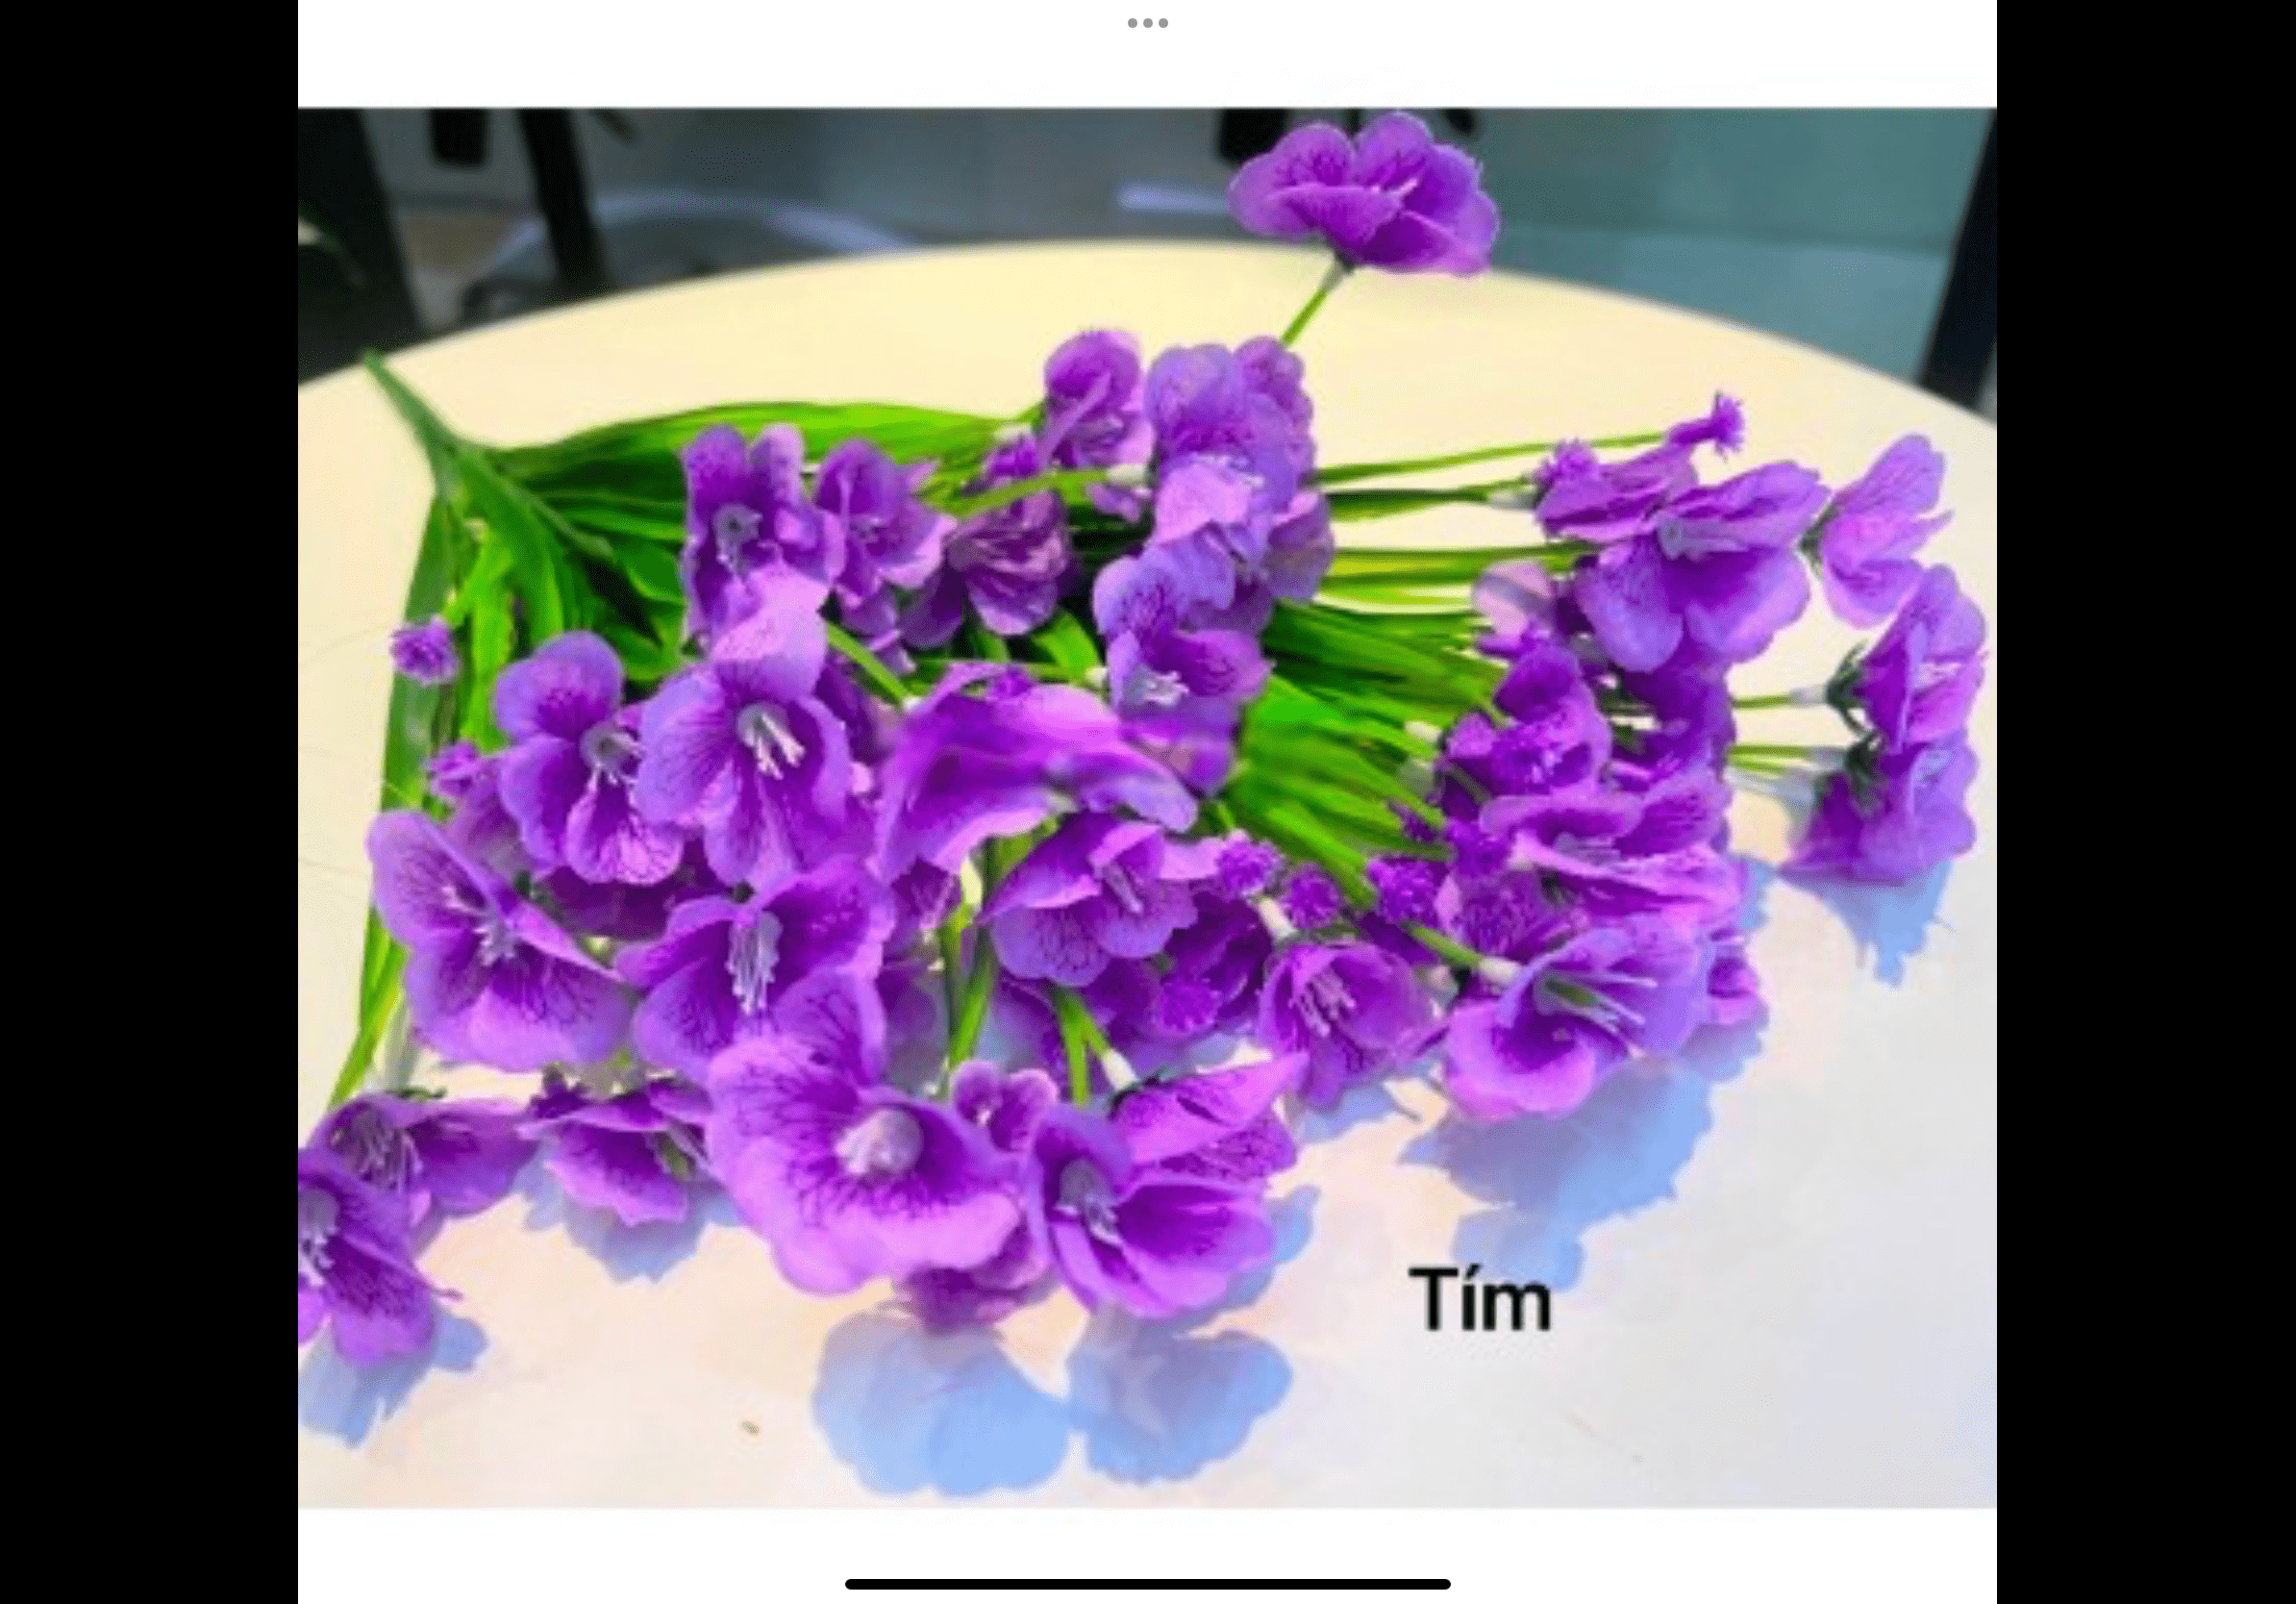 Chùm hoa thủy tiên - Cây hoa giả